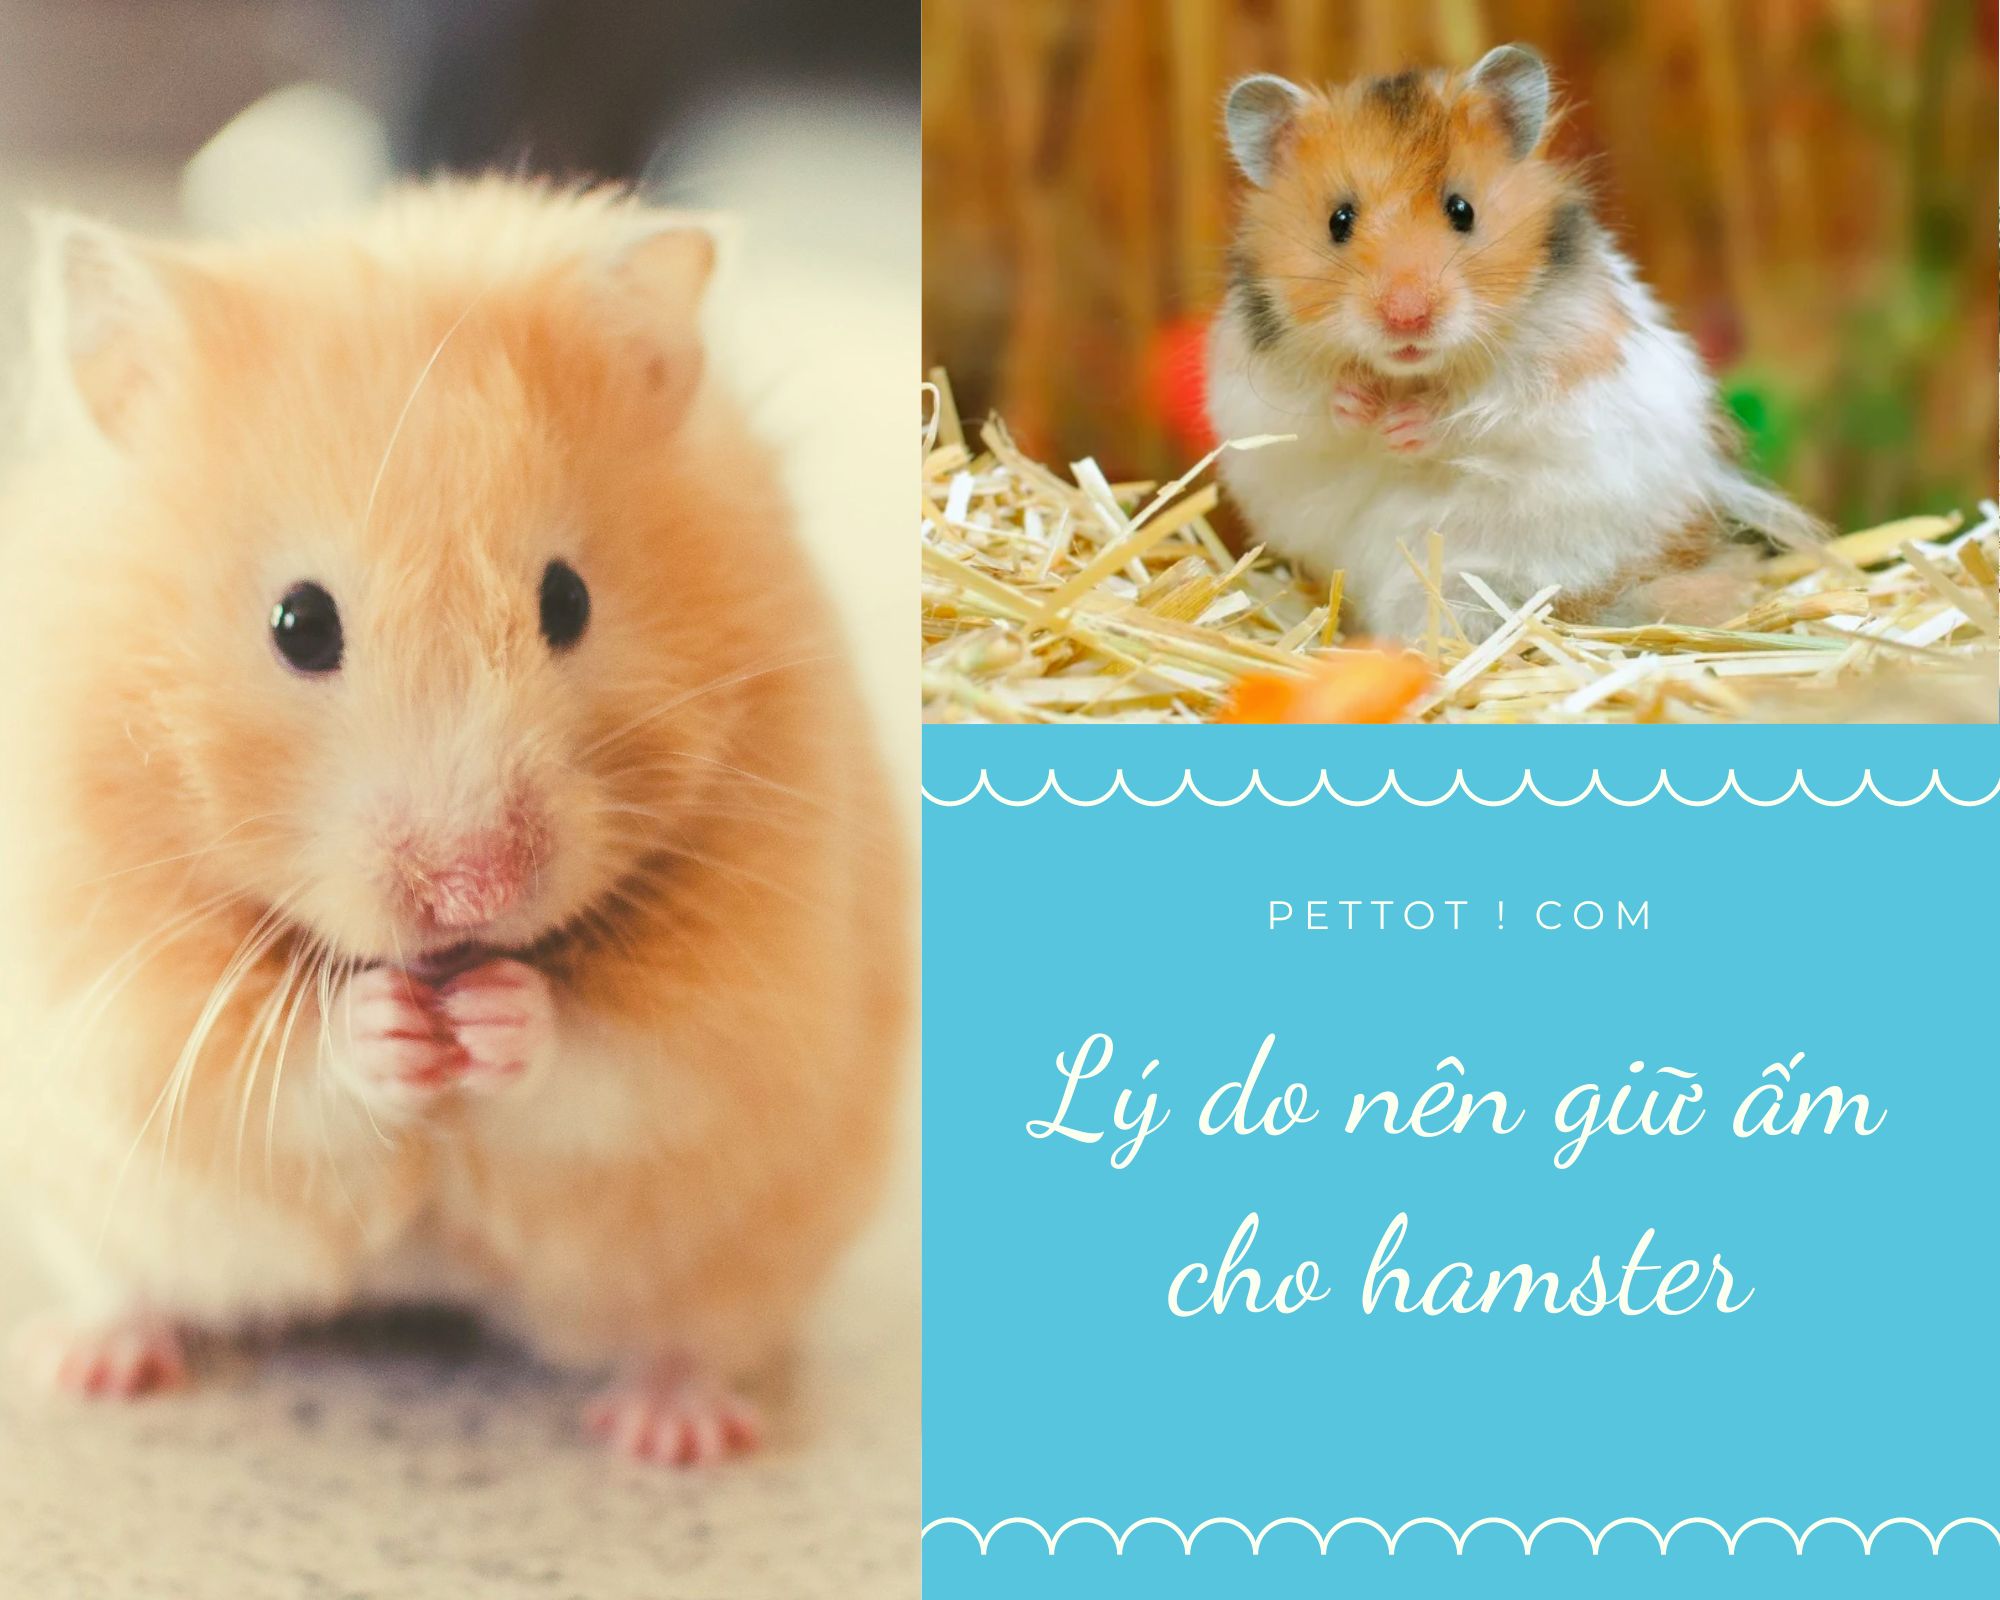 1. Lý do cần giữ ấm cho hamster trong mùa đông 